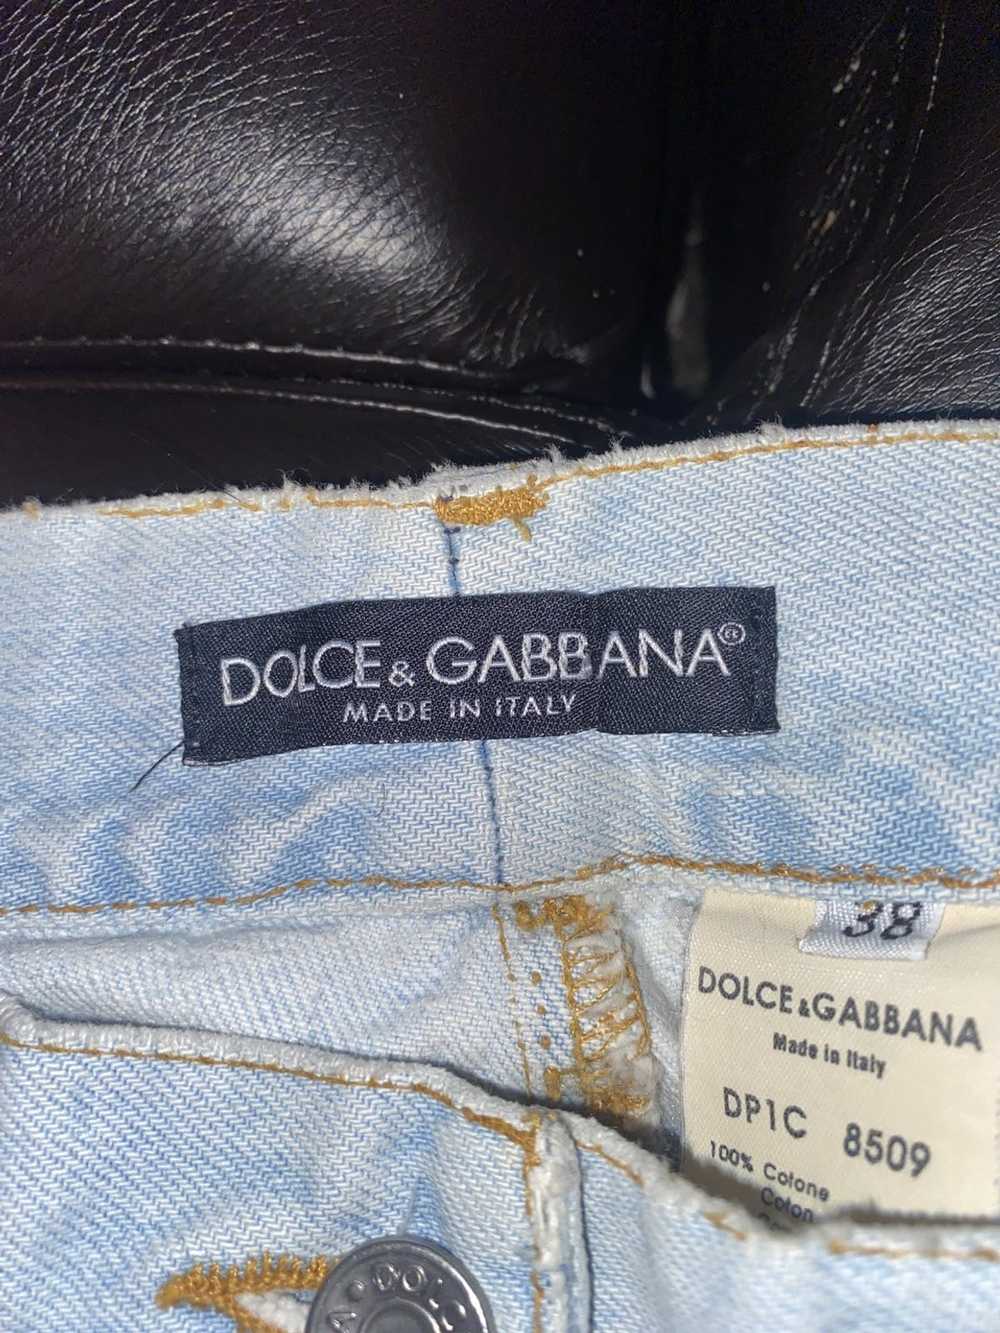 Dolce & Gabbana Dolce & Gabbana light wash jeans - image 1